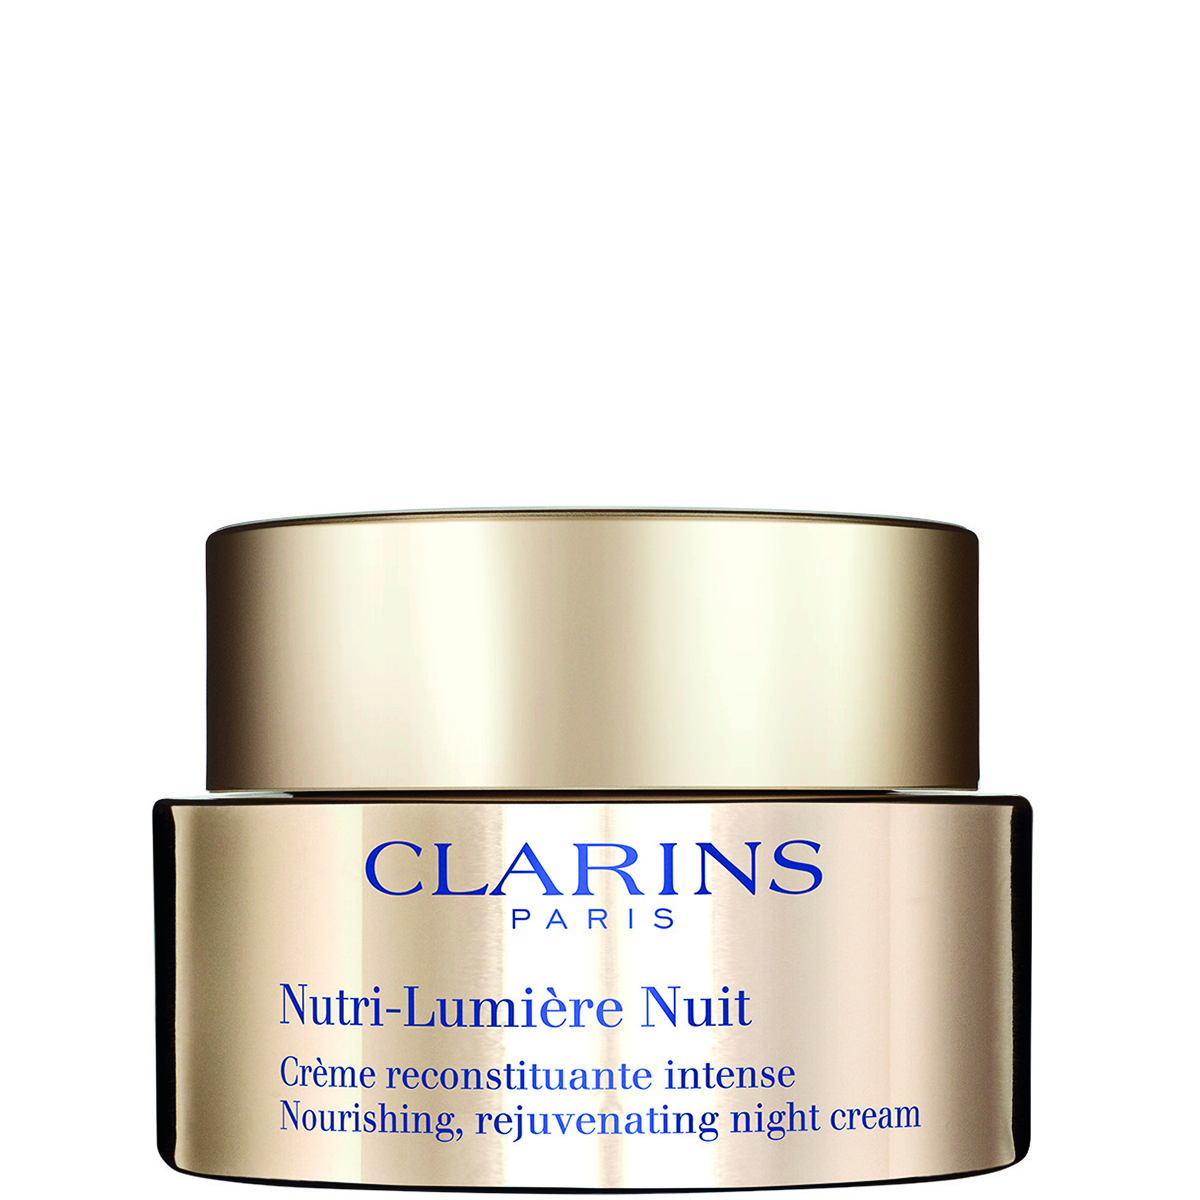 Clarins Nutri-Lumiere Nuit Nourishing Rejuvenating Night Cream